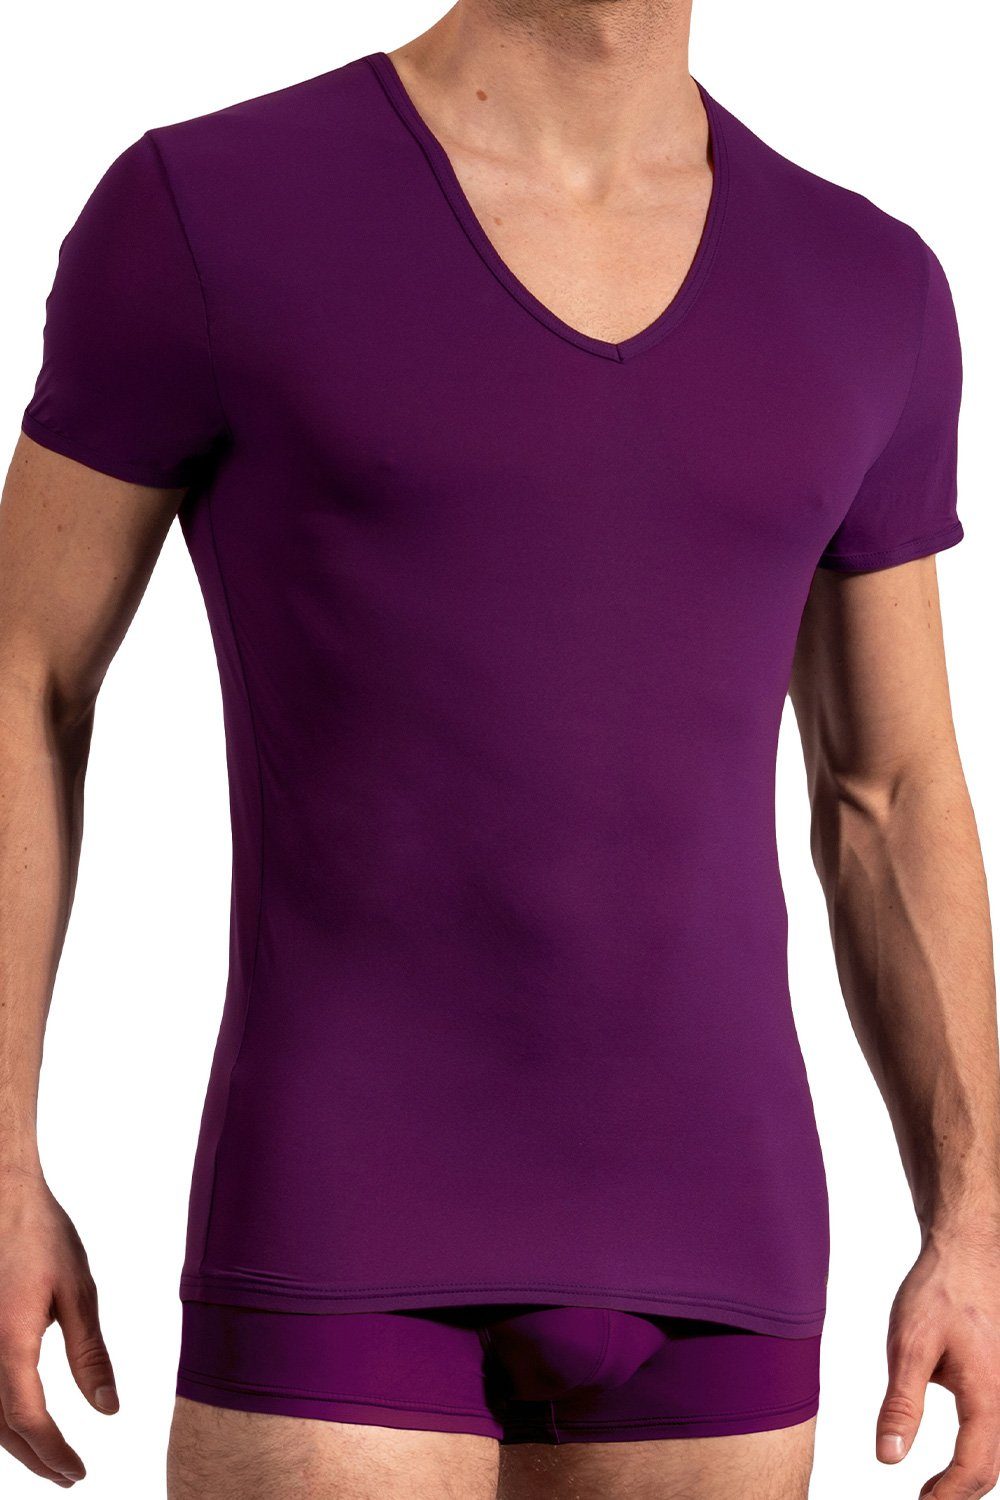 Olaf Benz T-Shirt Shirt V-Neck (Low) 106024 plum